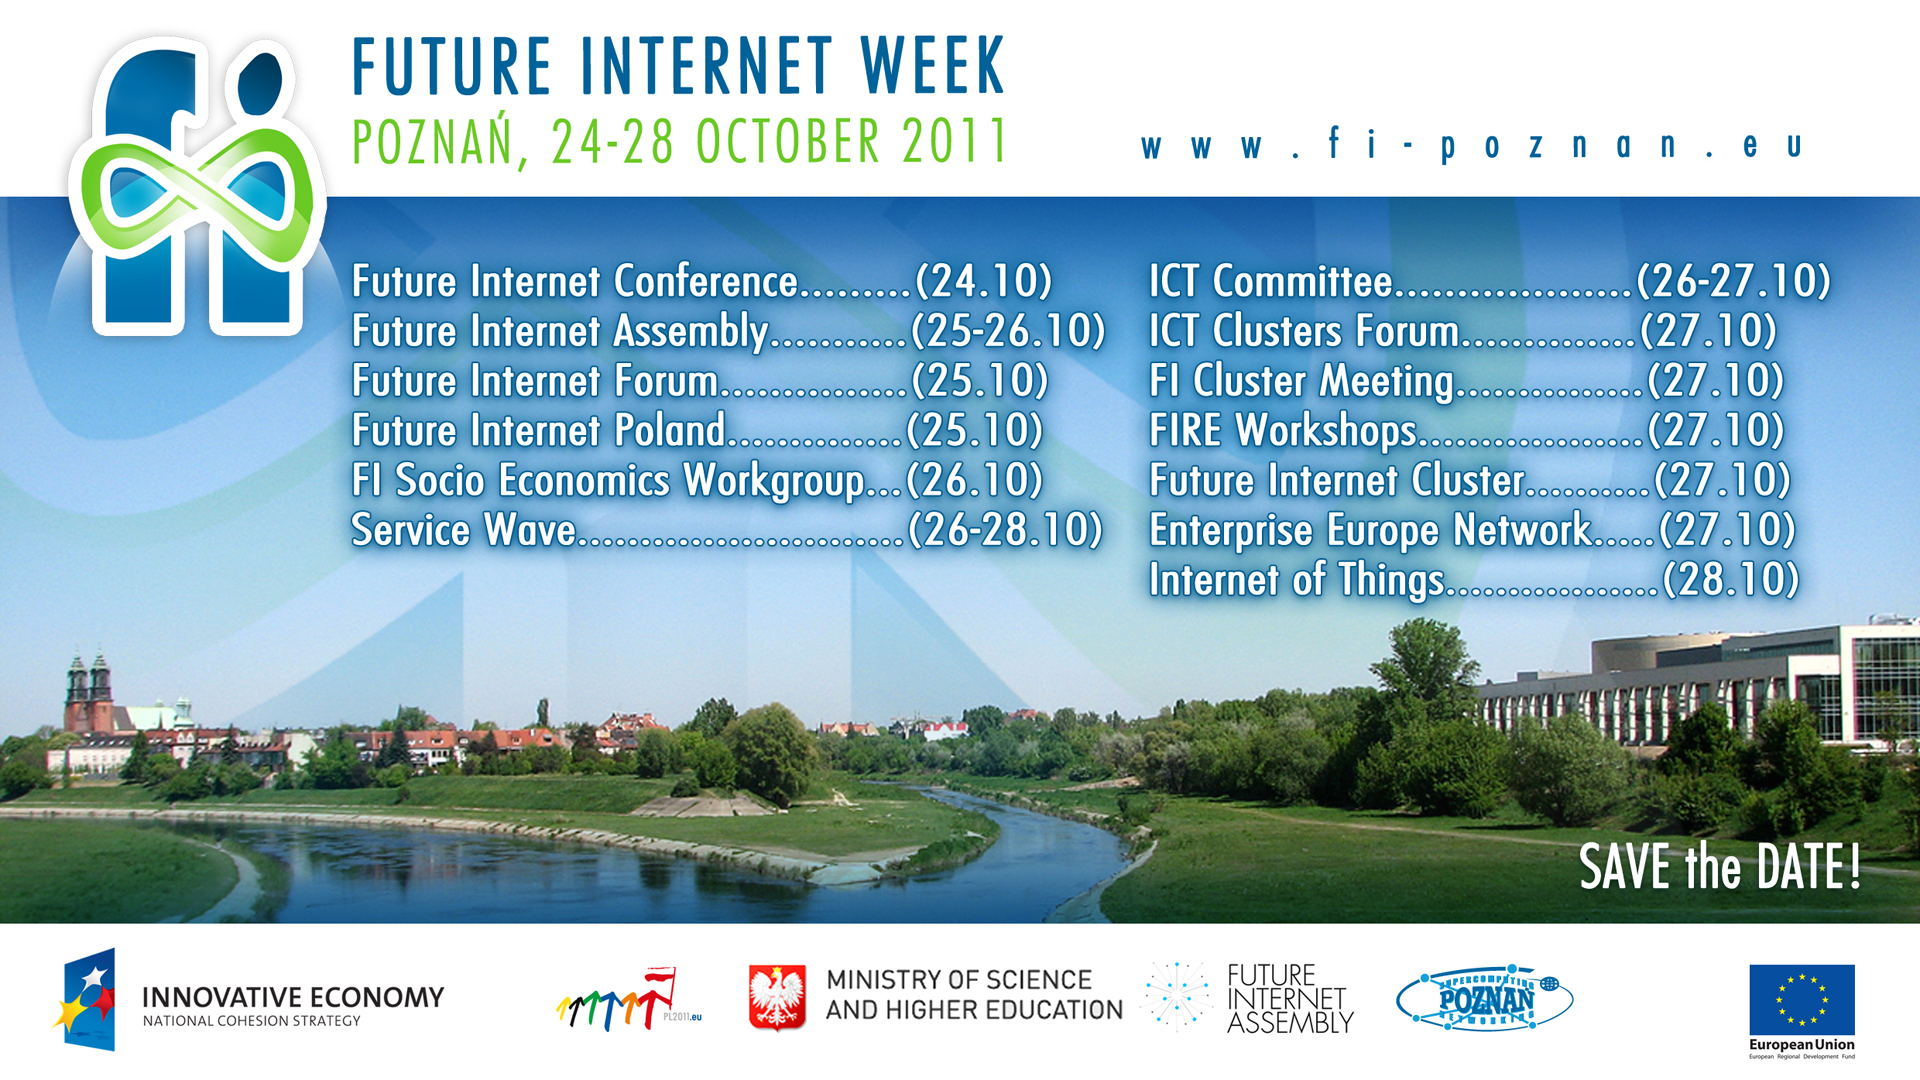 Rejestracja na Future Internet Week rozpoczęta!